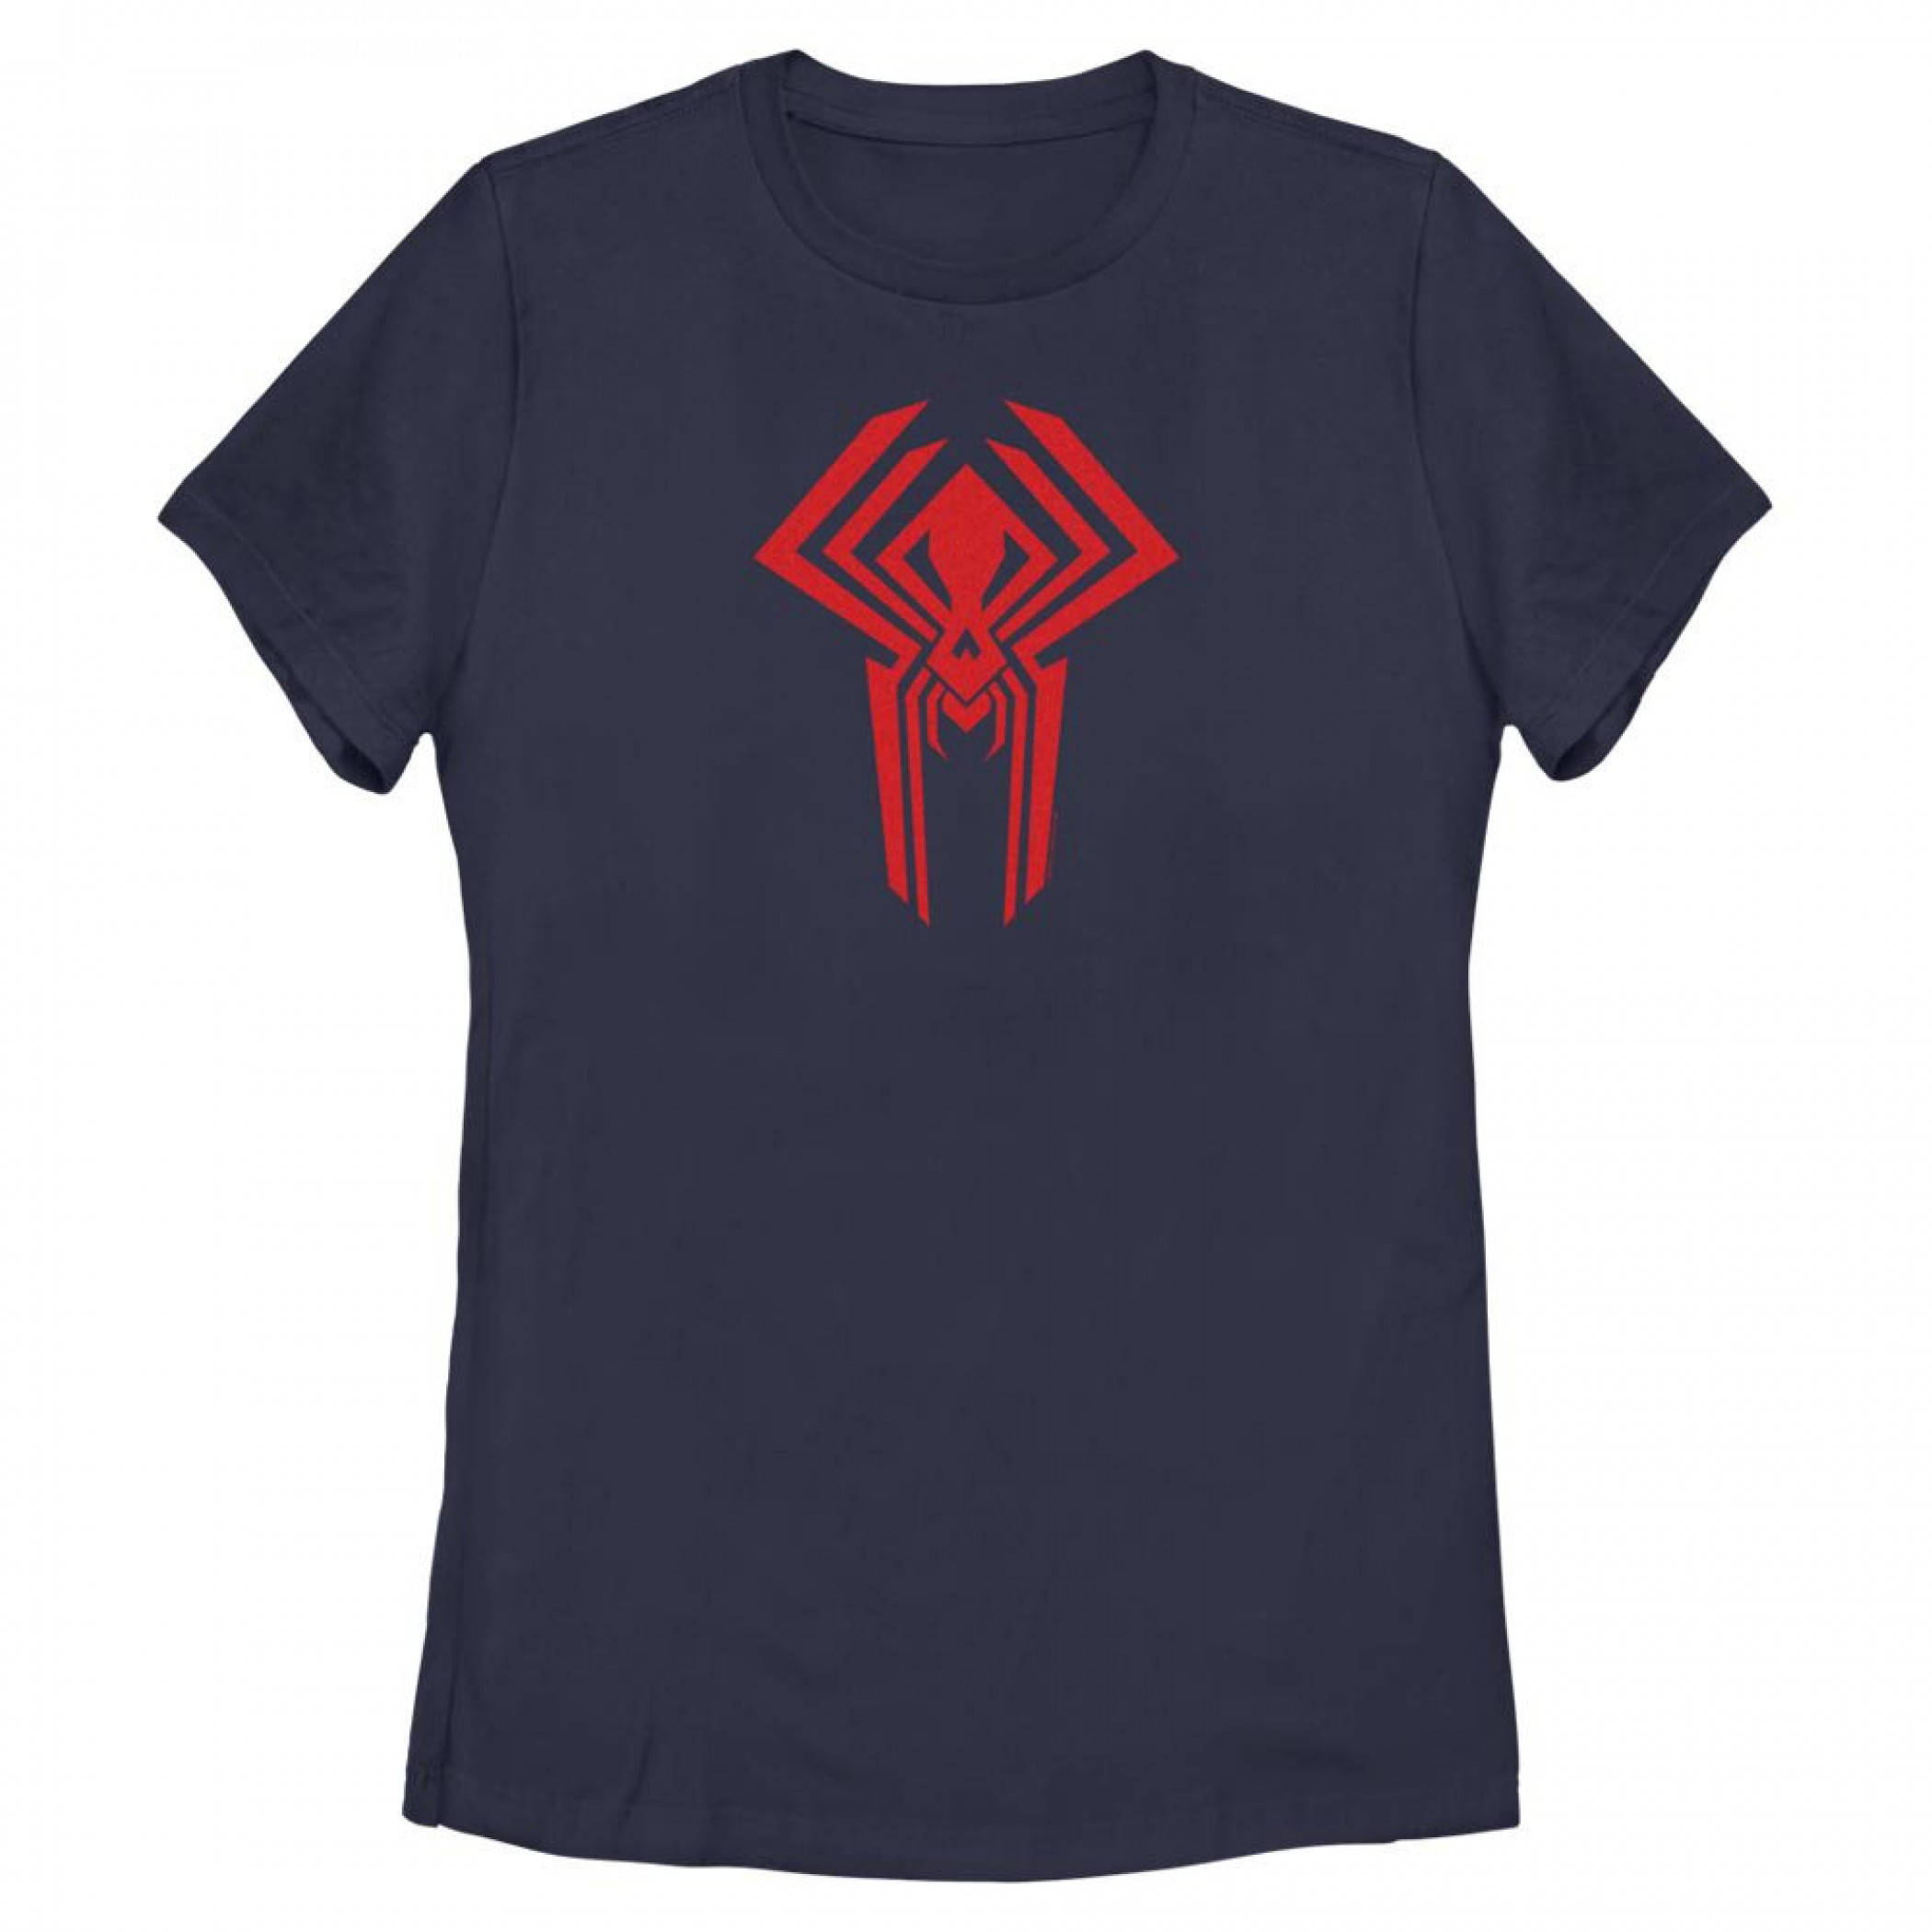 The Spider-Verse Spider-Man 2099 Symbol Women's T-Shirt